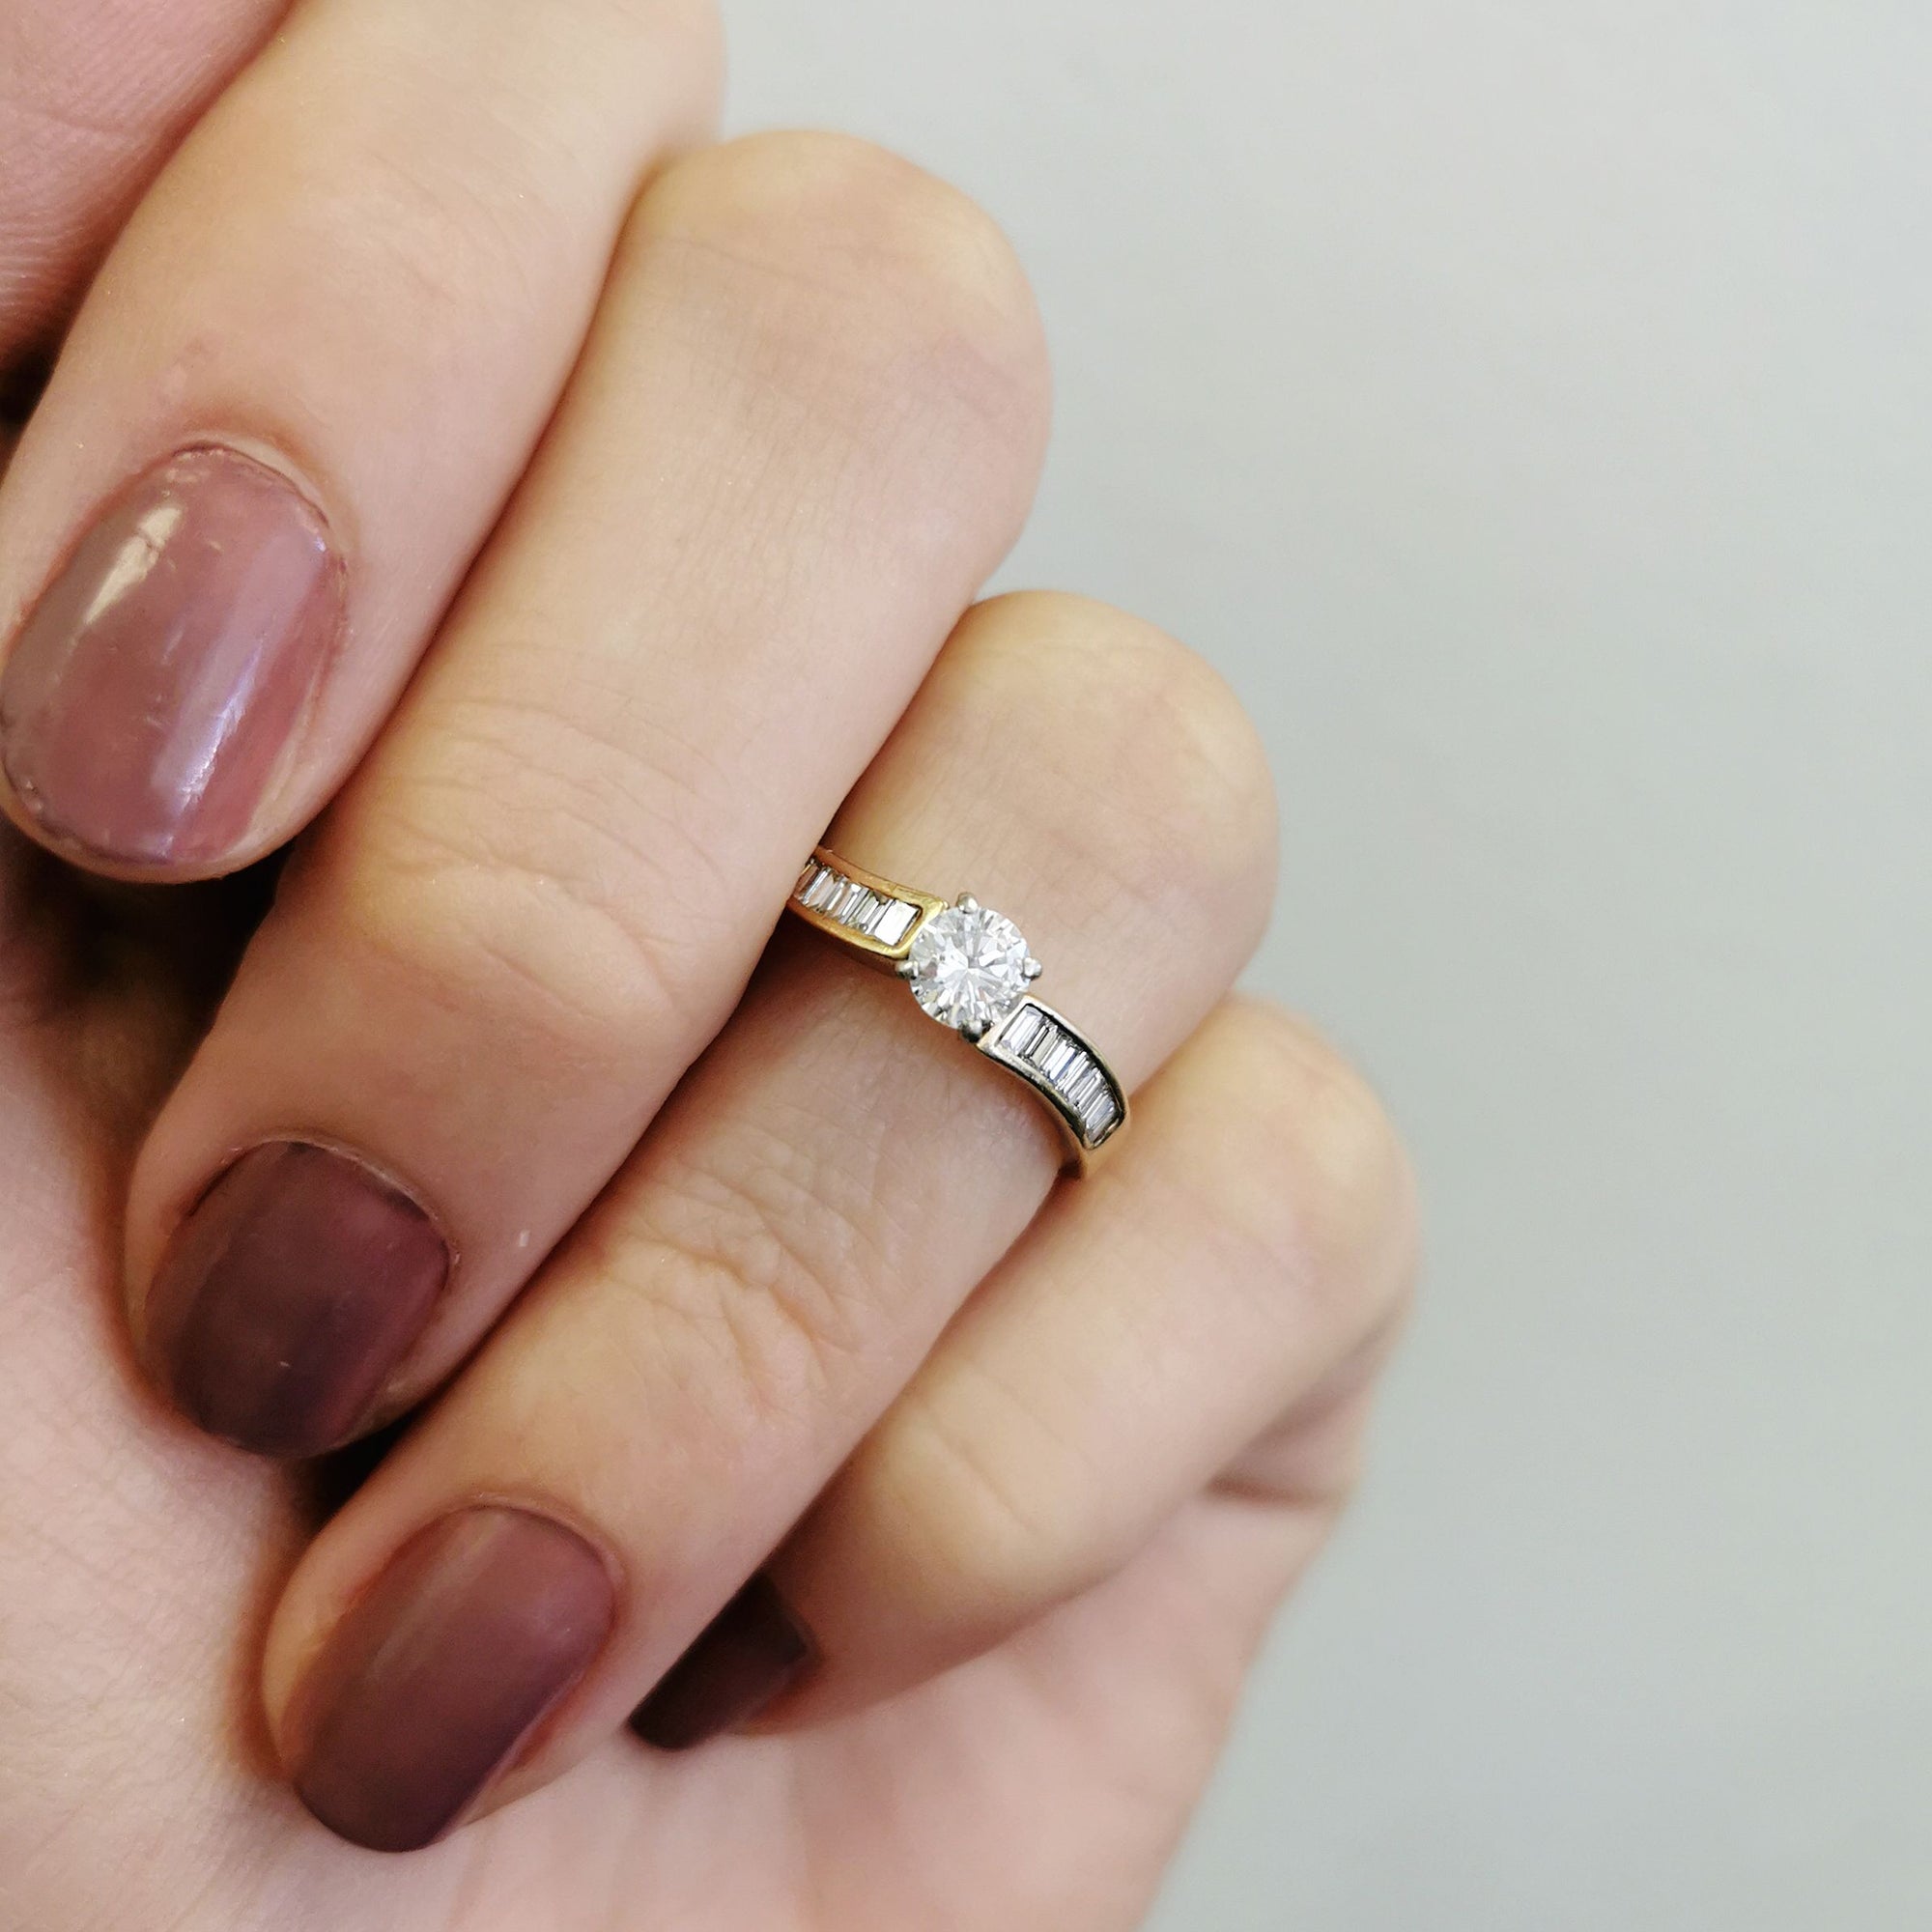 Diamond Engagement Ring With Baguette Cut Accents | 0.57ctw | SZ 4.5 |